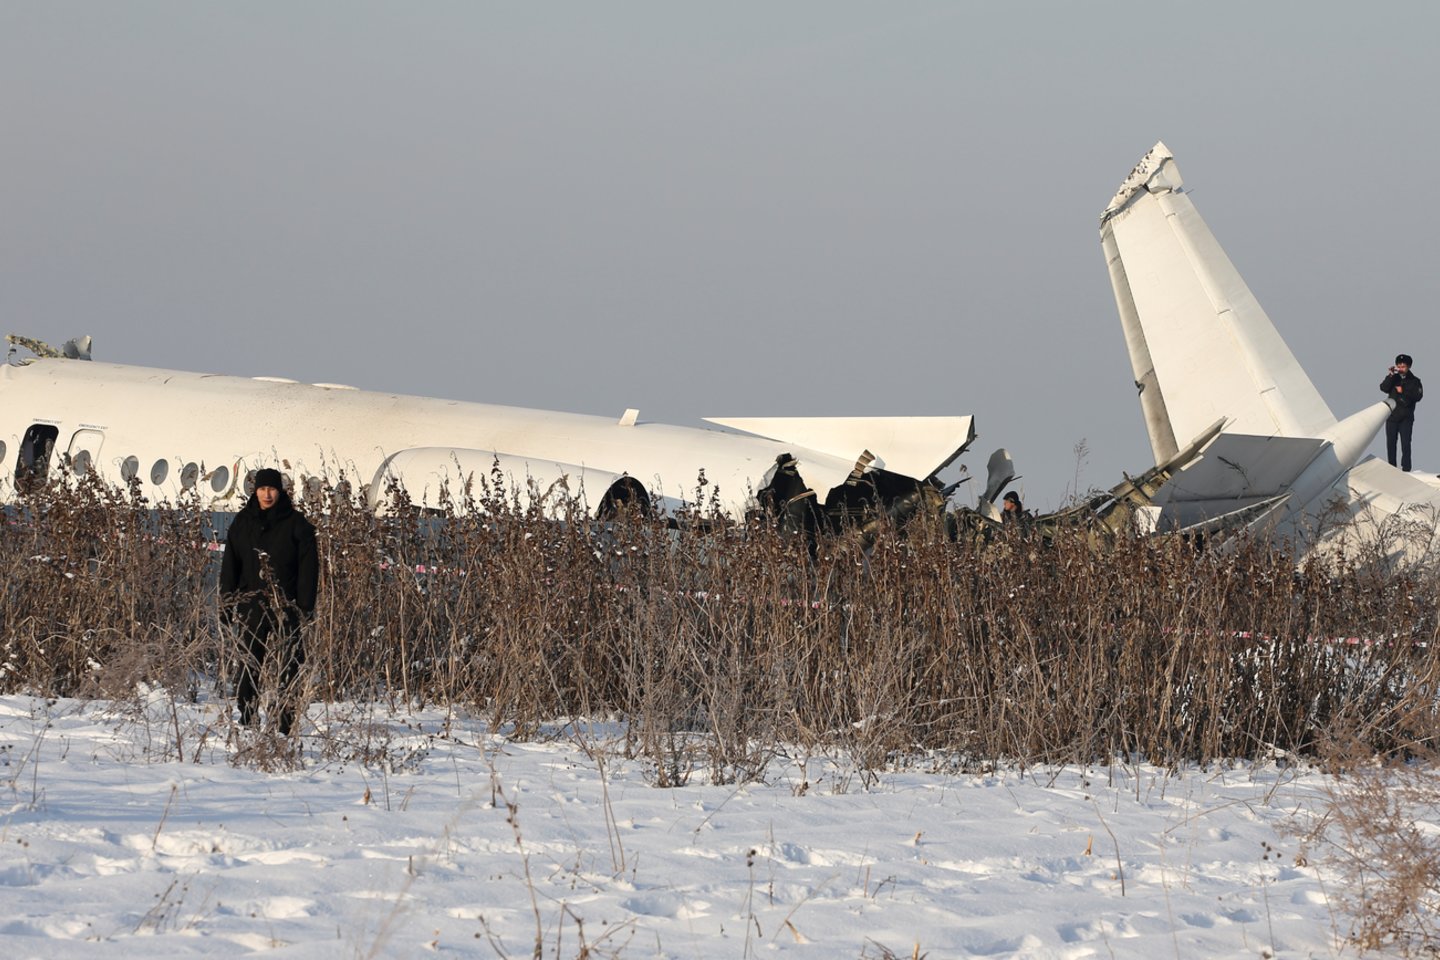 Ankstyvą penktadienio rytą Kazachstane nukrito lėktuvas, kuriuo skrido 100 žmonių. Kaip praneša BBC, lėktuvas nukrito vos pakilęs iš oro uosto Almatoje. Gelbėjimo tarnybos praneša apie 15 žmonių žūtį.  <br> Reuters/Scanpix nuotr.